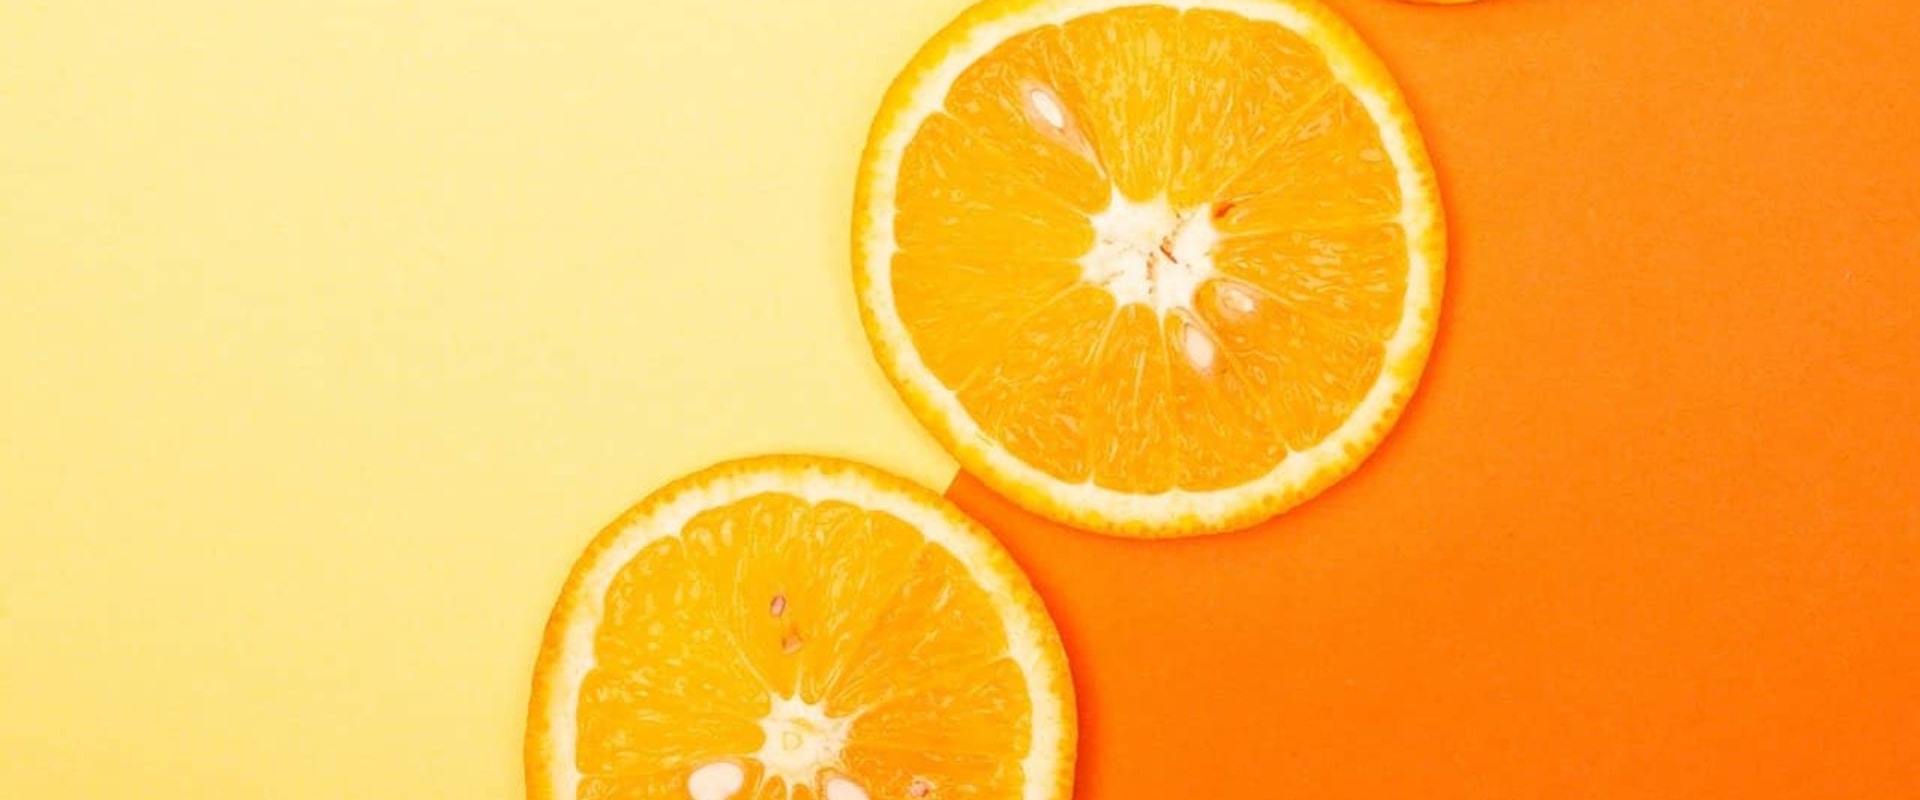 Citrus Fragrances - Exploring Their Unique Aromas